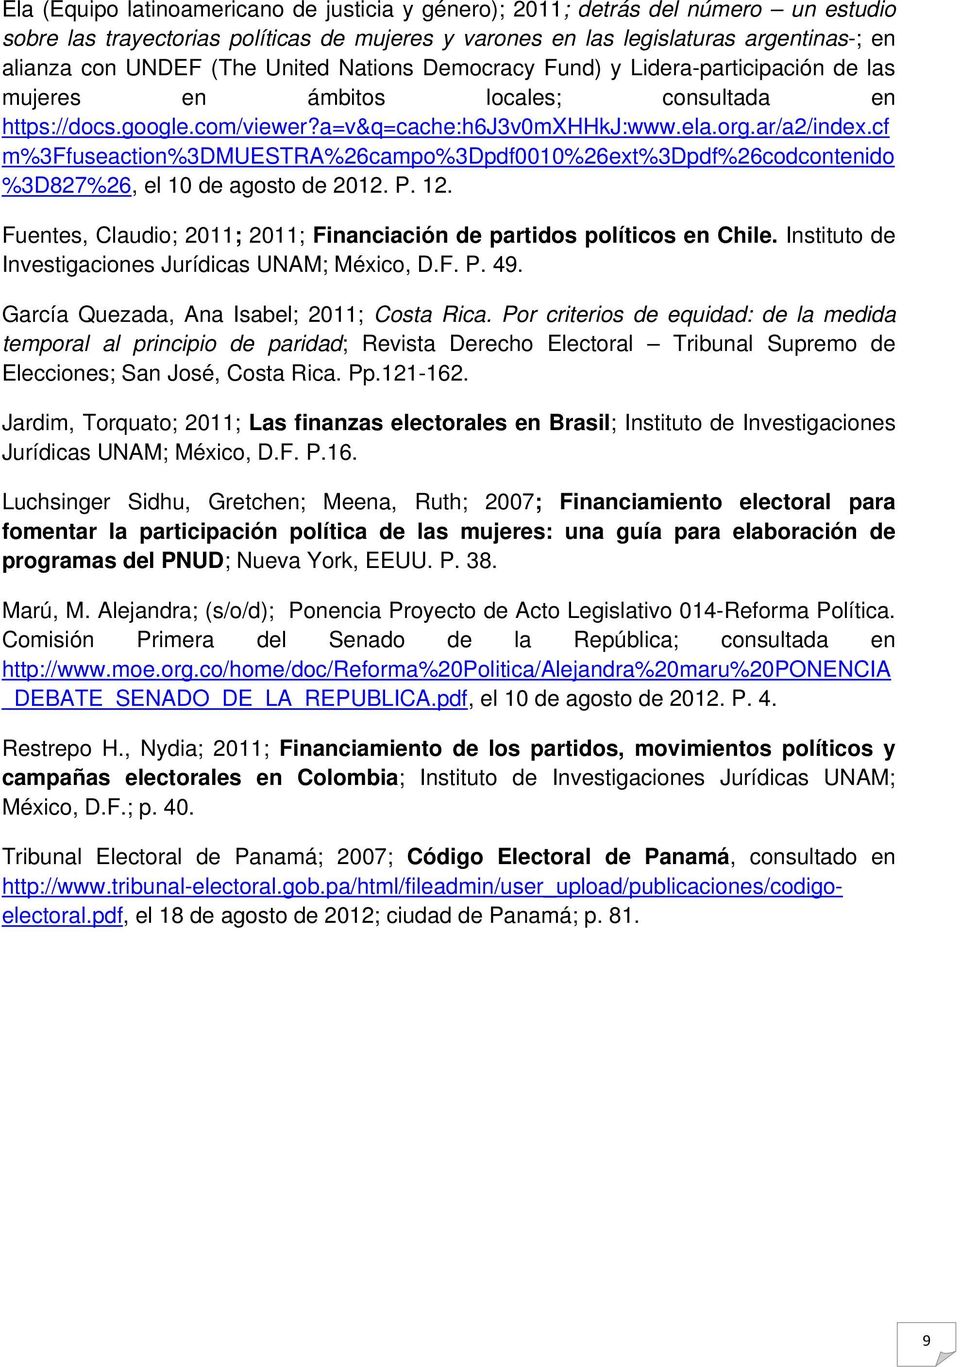 cf m%3ffuseaction%3dmuestra%26campo%3dpdf0010%26ext%3dpdf%26codcontenido %3D827%26, el 10 de agosto de 2012. P. 12. Fuentes, Claudio; 2011; 2011; Financiación de partidos políticos en Chile.